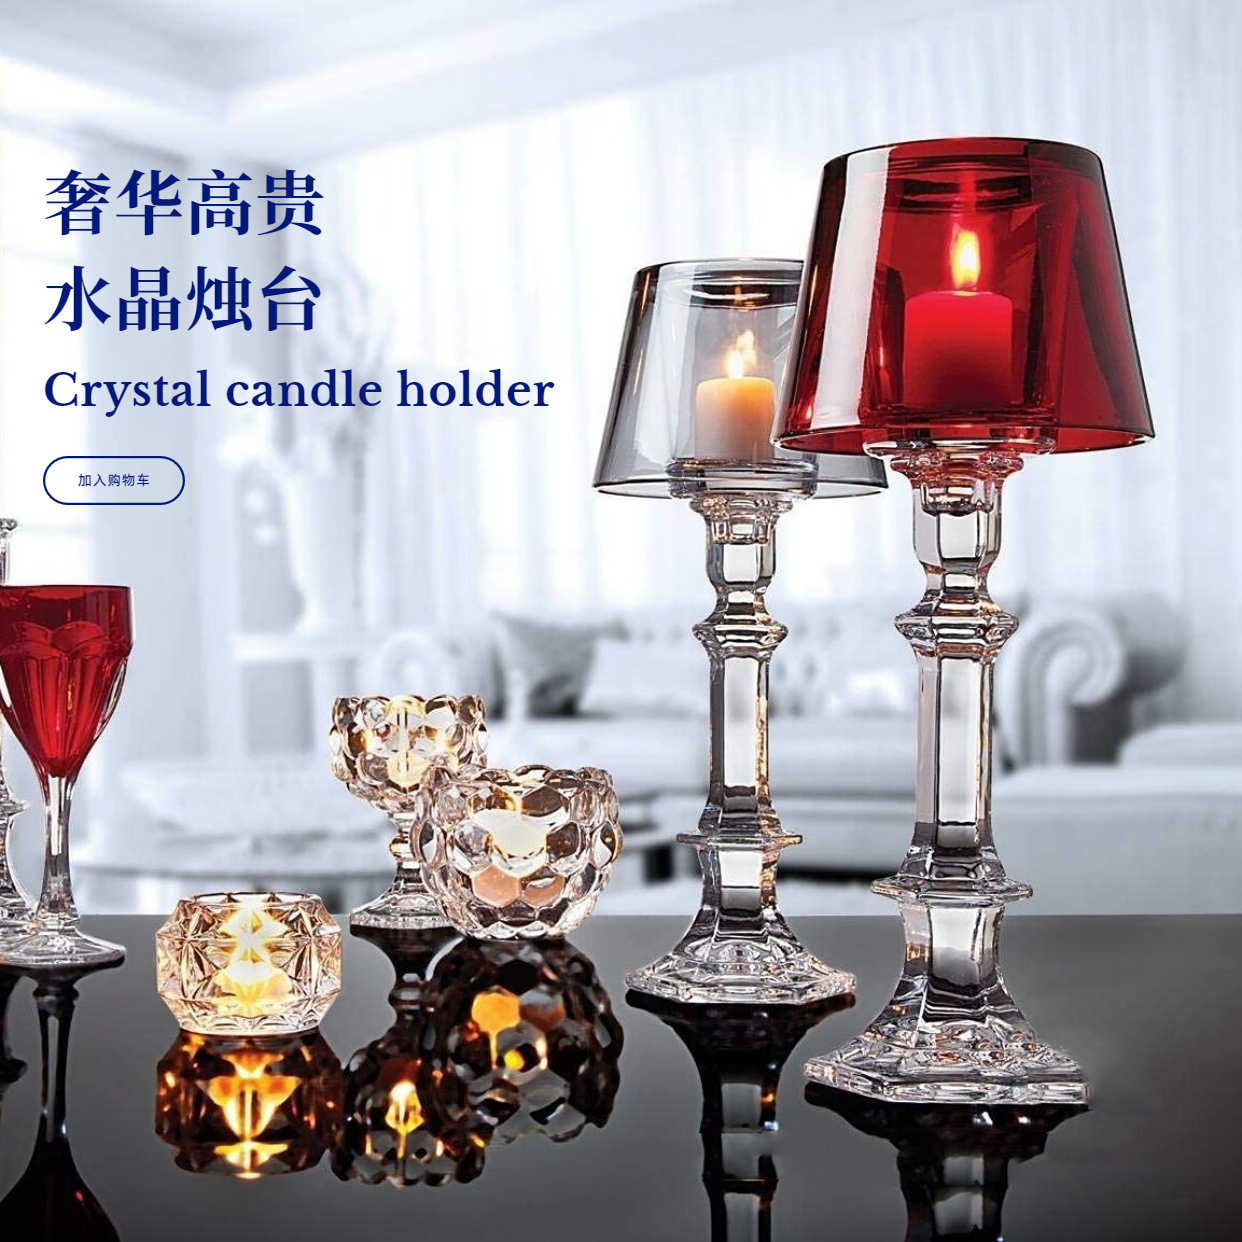 法国欧式水晶台灯烛台高端轻奢网红热情似火魅惑精致家居摆件晚餐